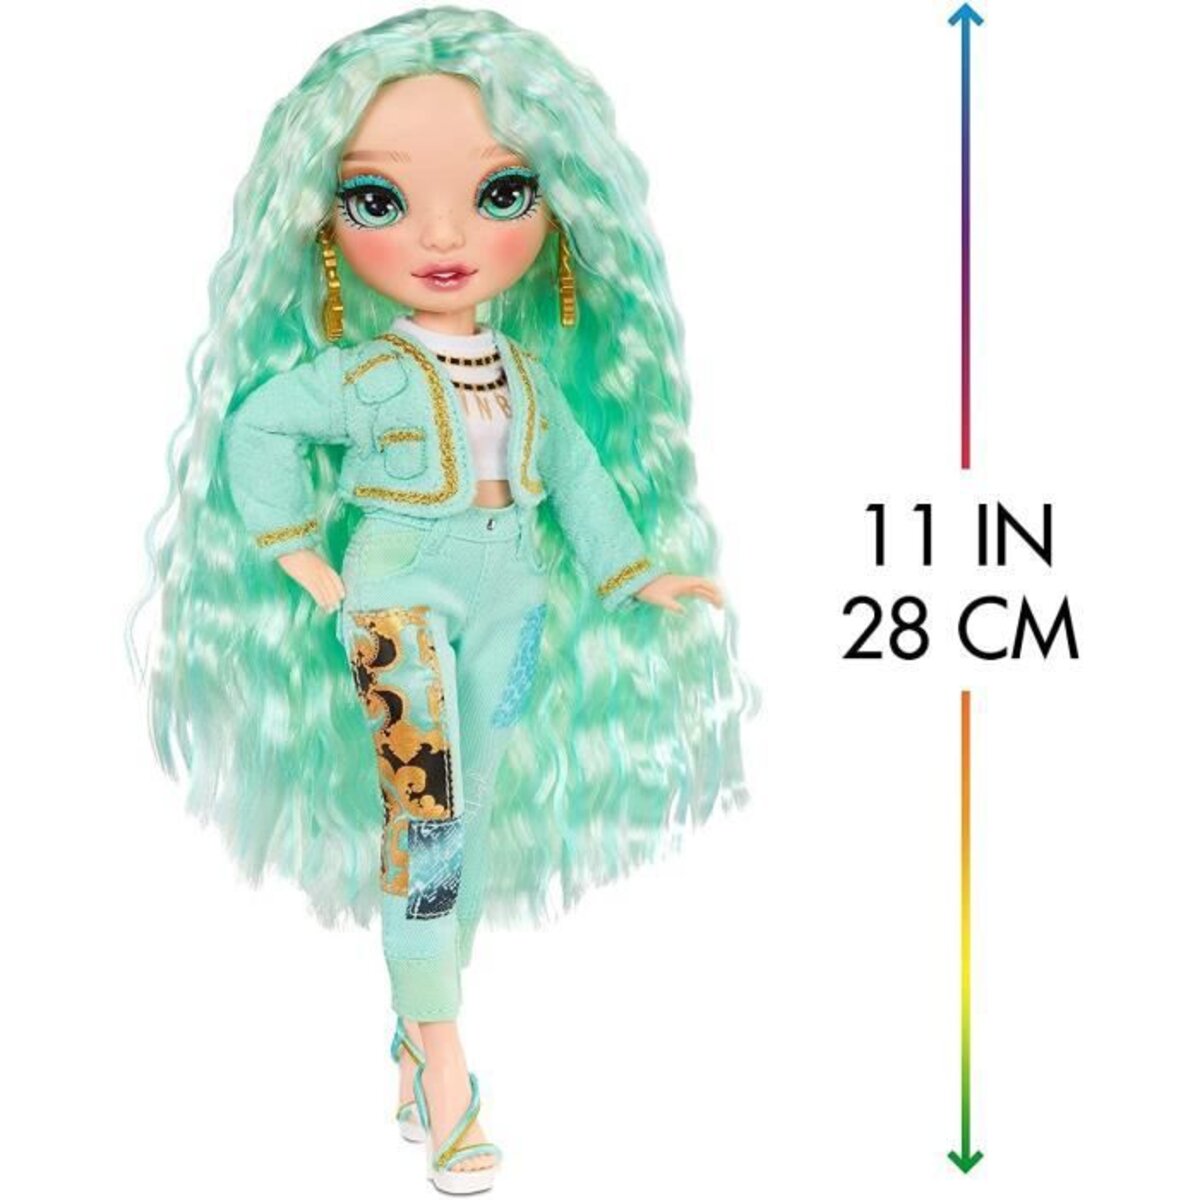 Rainbow high - poupée mannequin 28cm - mint - La Poste